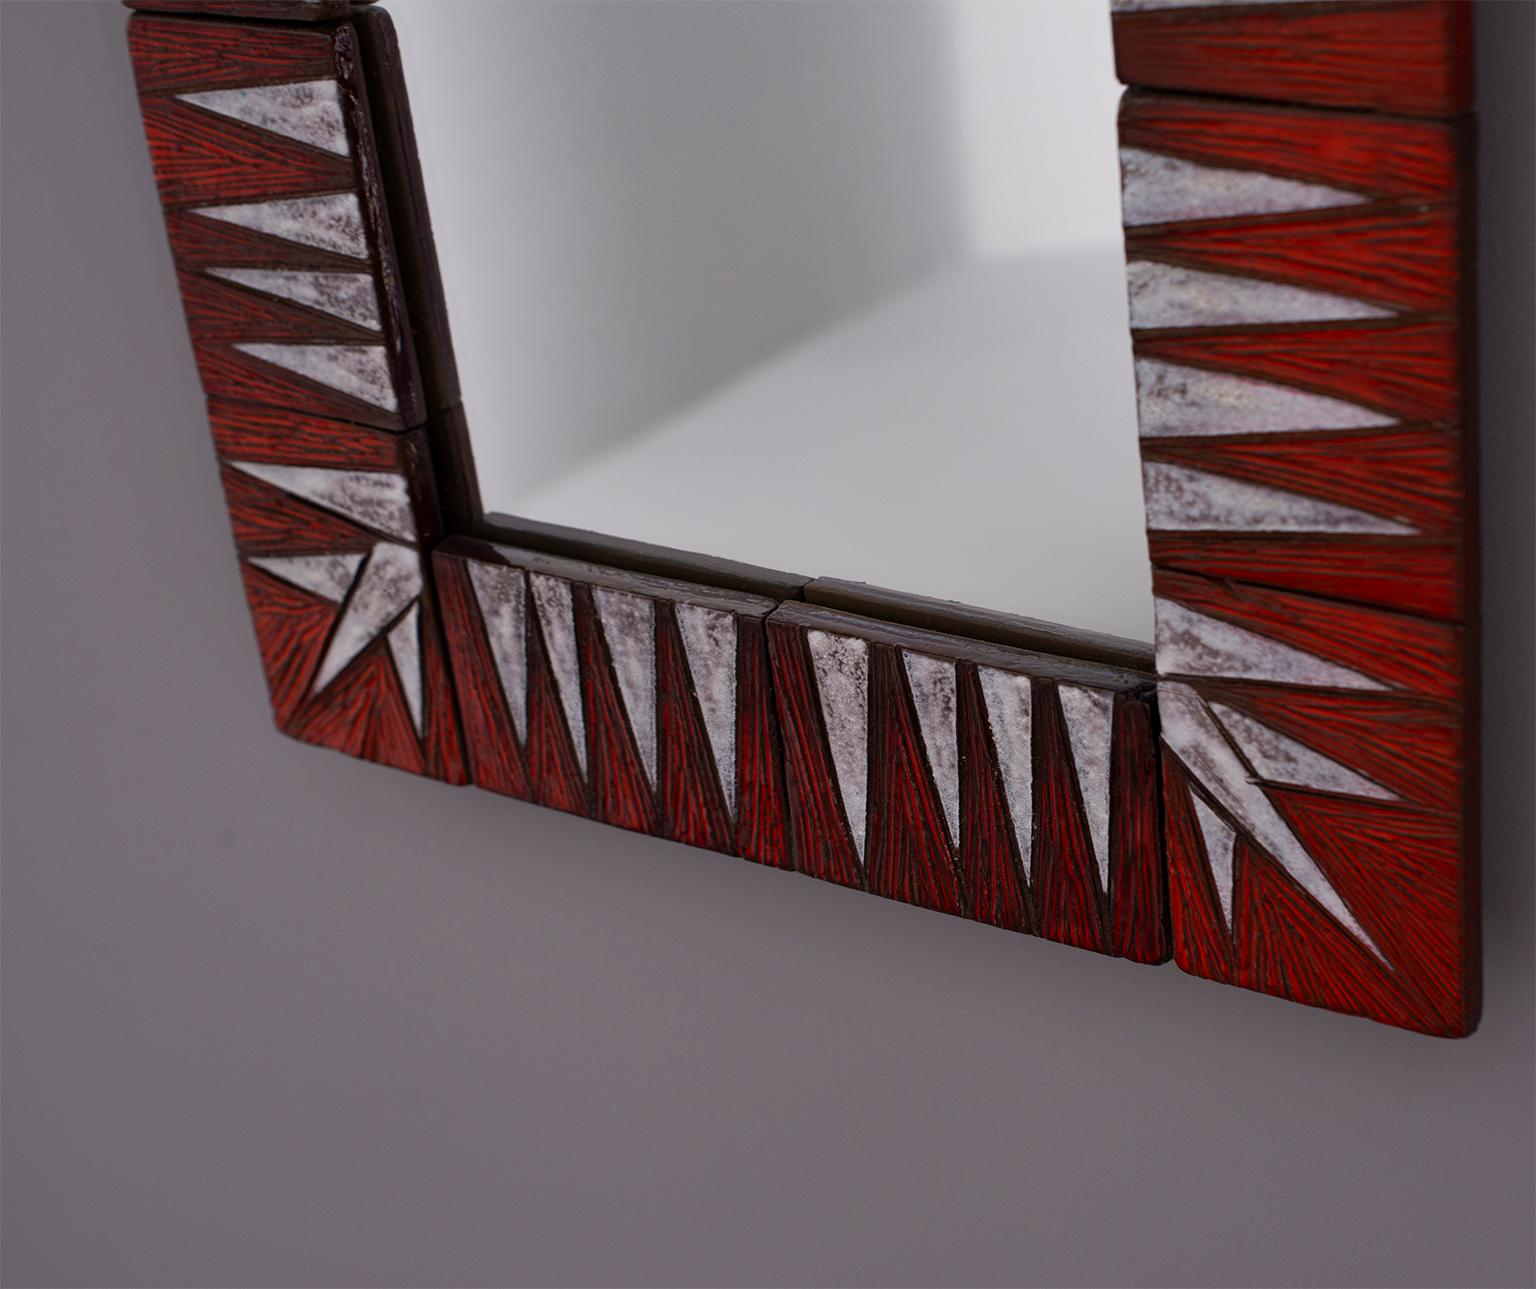 Glazed Midcentury French Ceramic Red and White Tile Framed Mirror